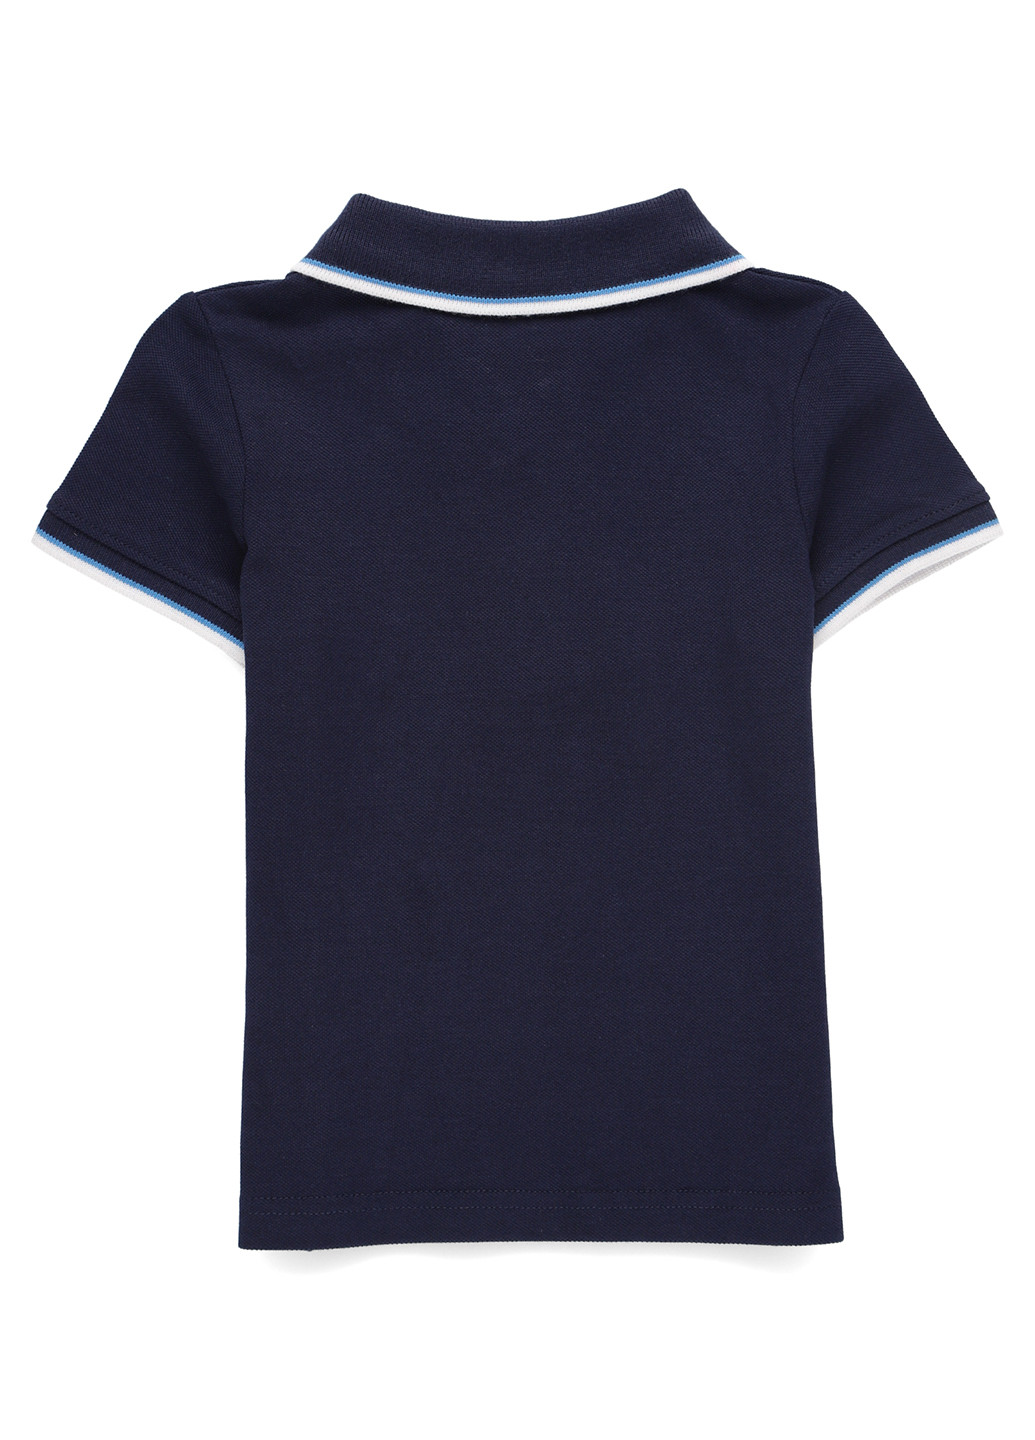 Темно-синяя детская футболка-поло для мальчика C&A однотонная